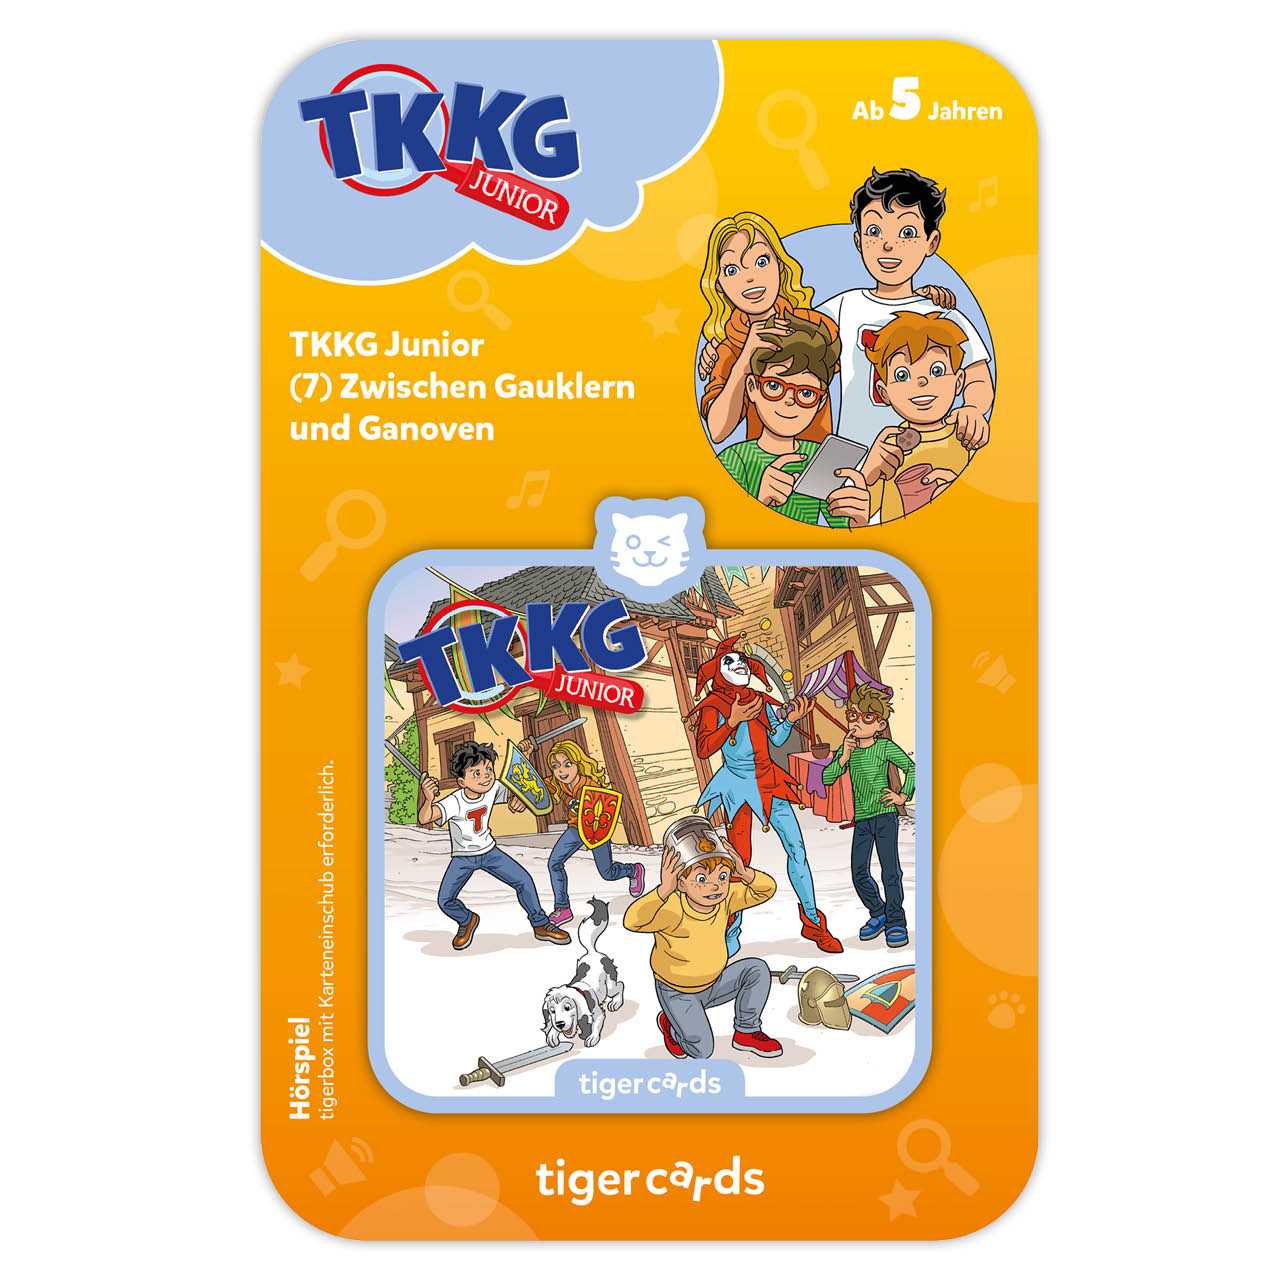 TKKG - Zwischen Gauklern und Ganoven als Tigercard